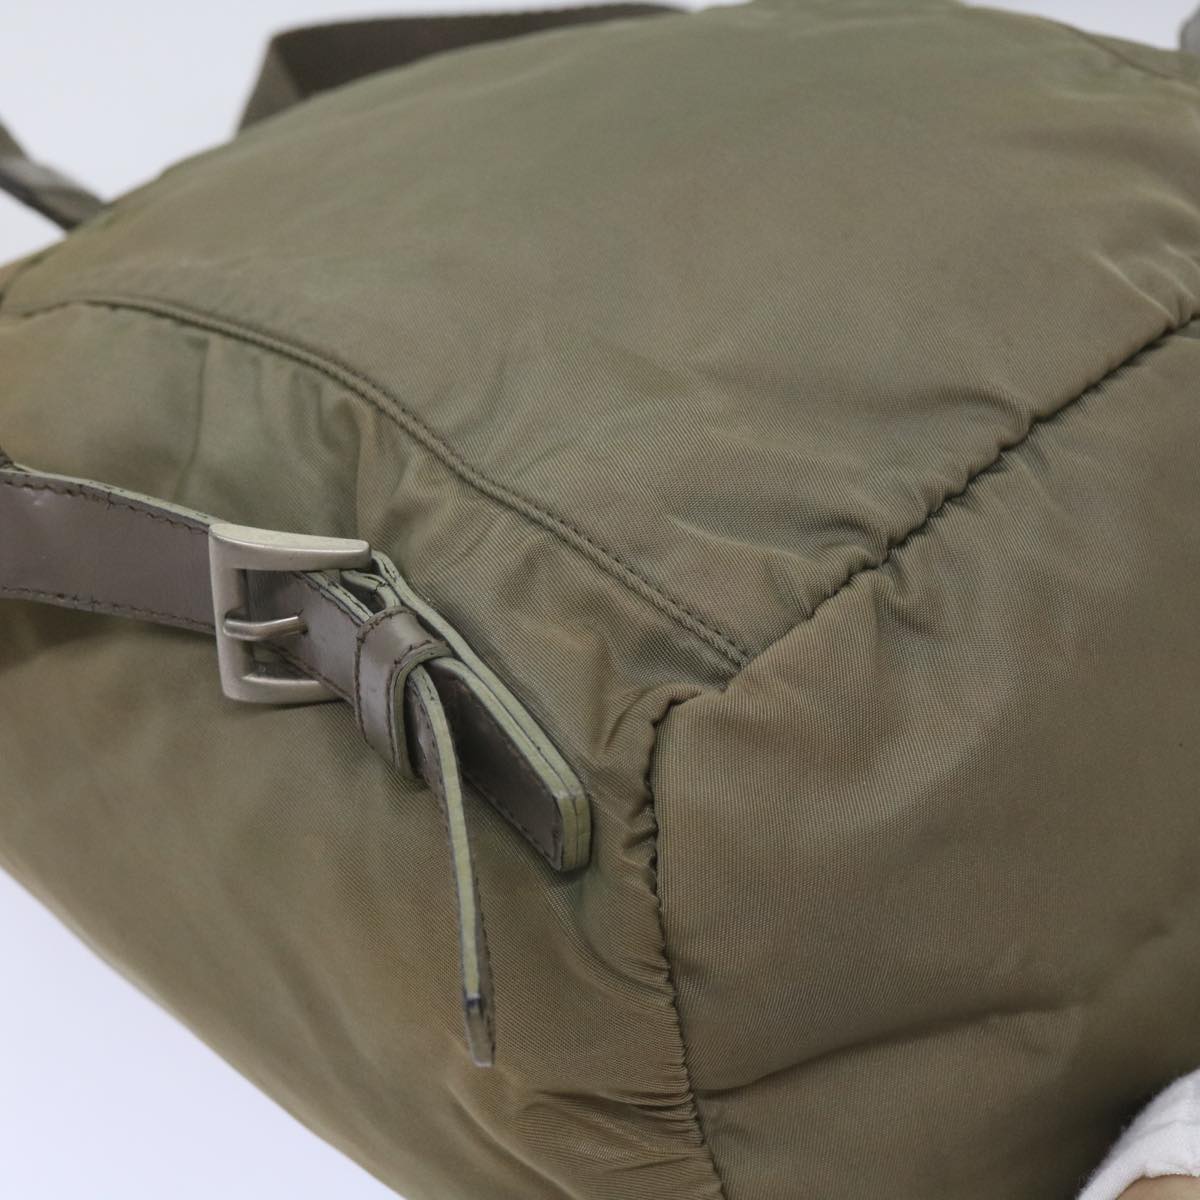 PRADA Backpack Nylon Beige Auth 66139